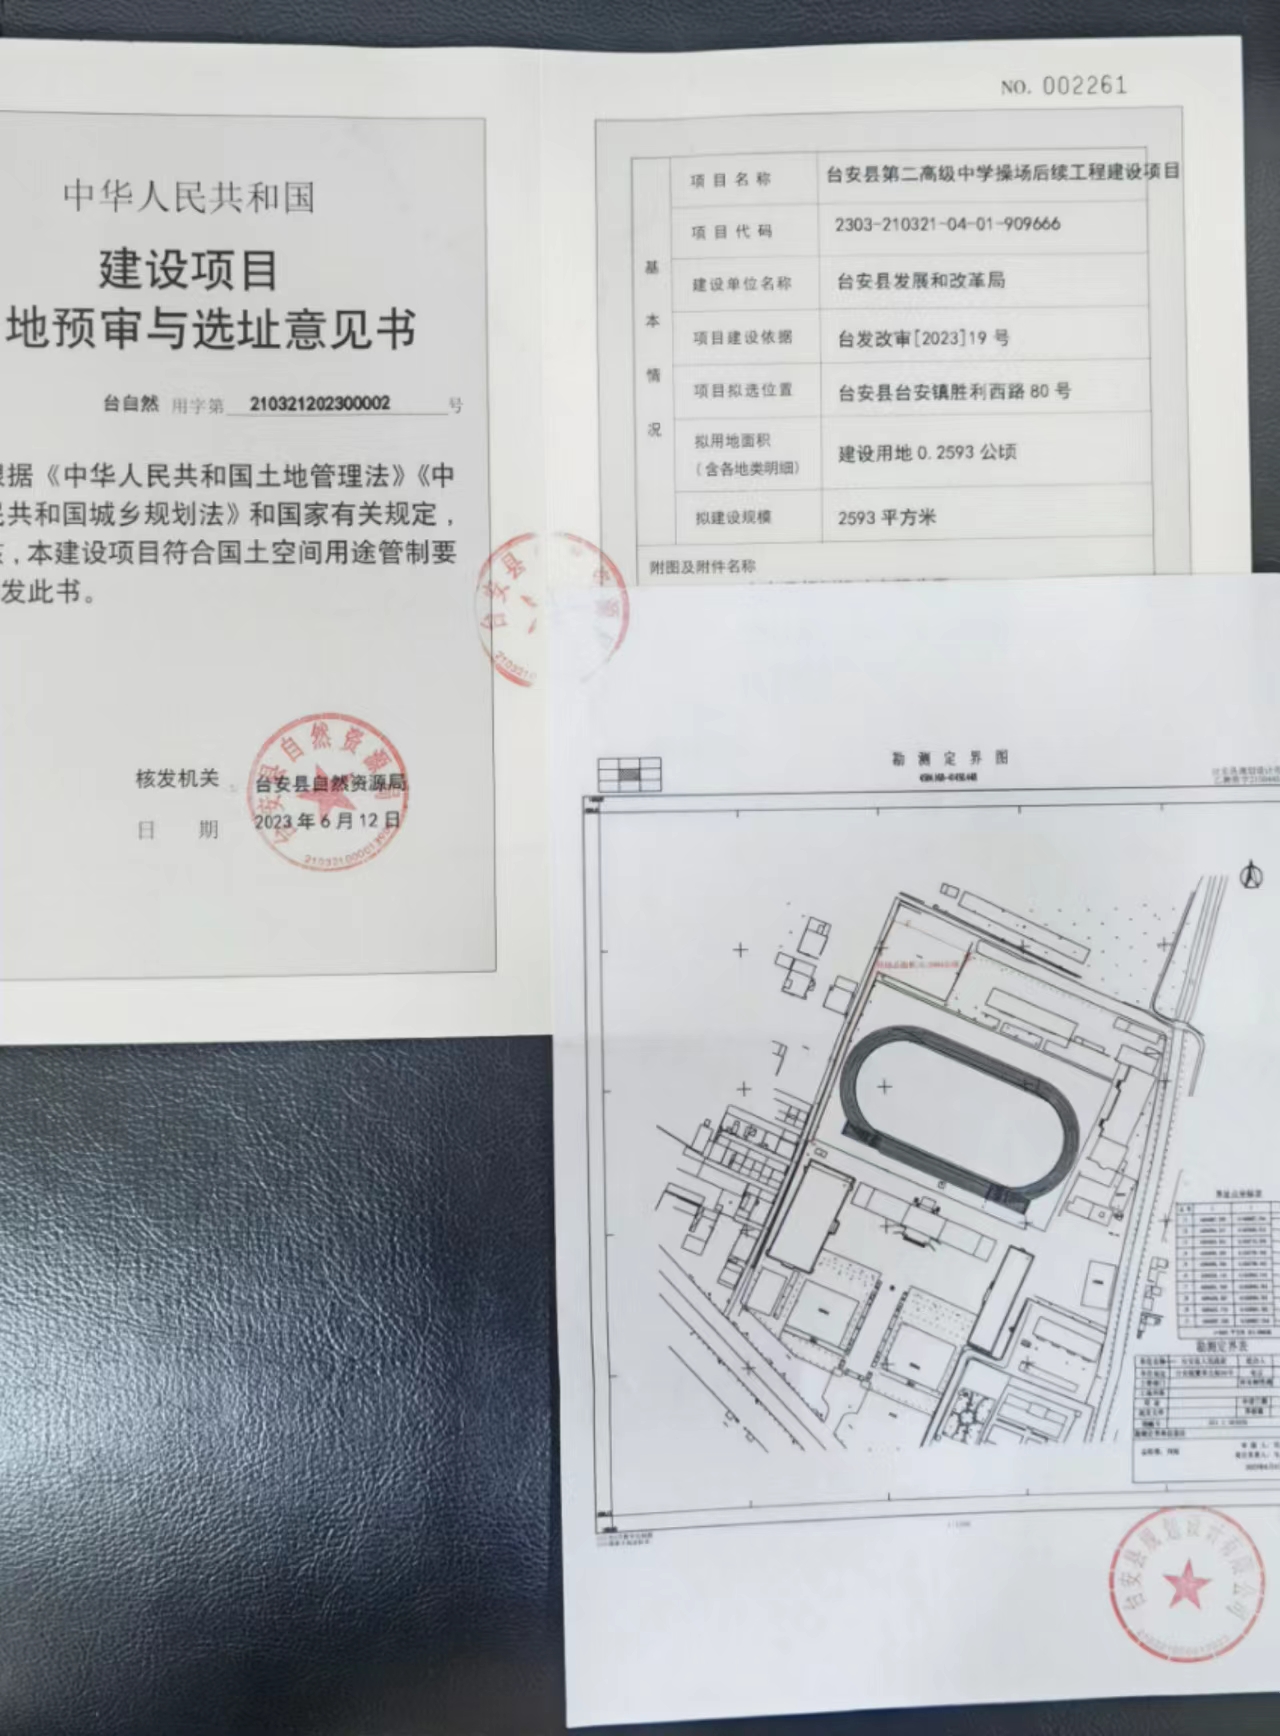 台安县第二高级中学操场后续工程建设项目.jpg